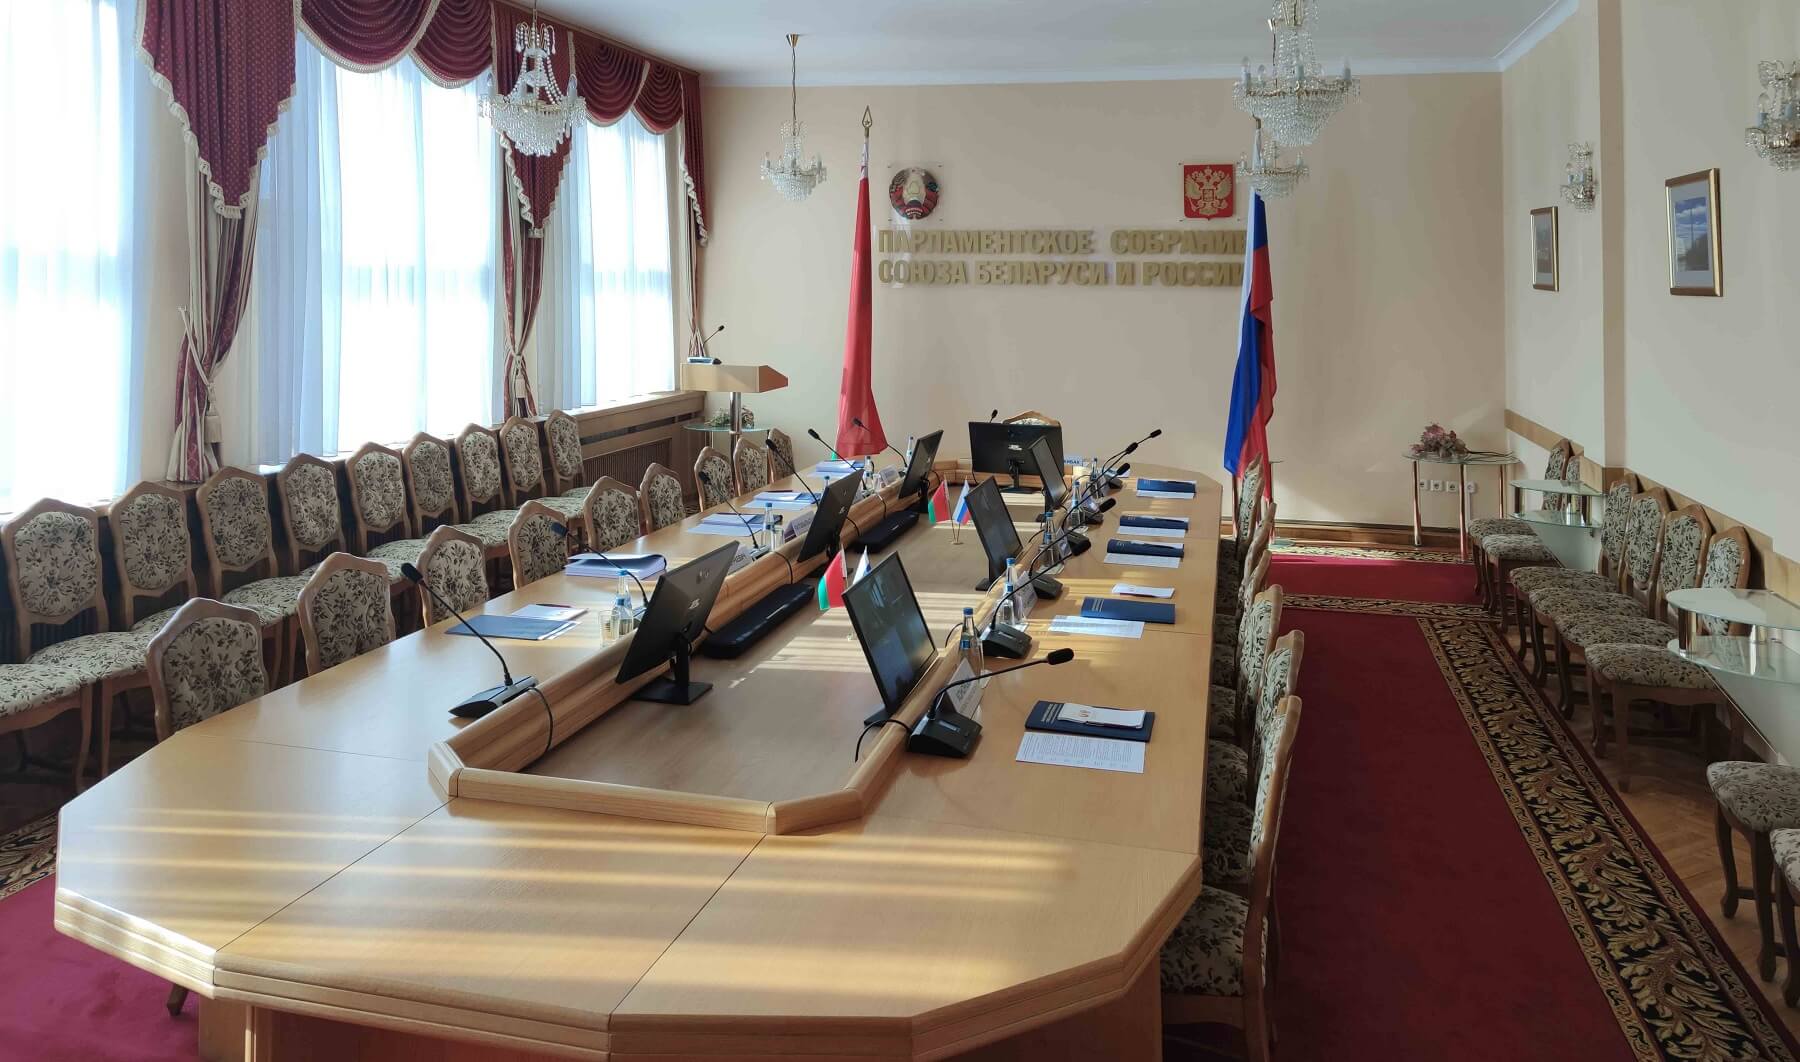 Зал переговоров для Парламентского Собрания Союза России и Беларуси